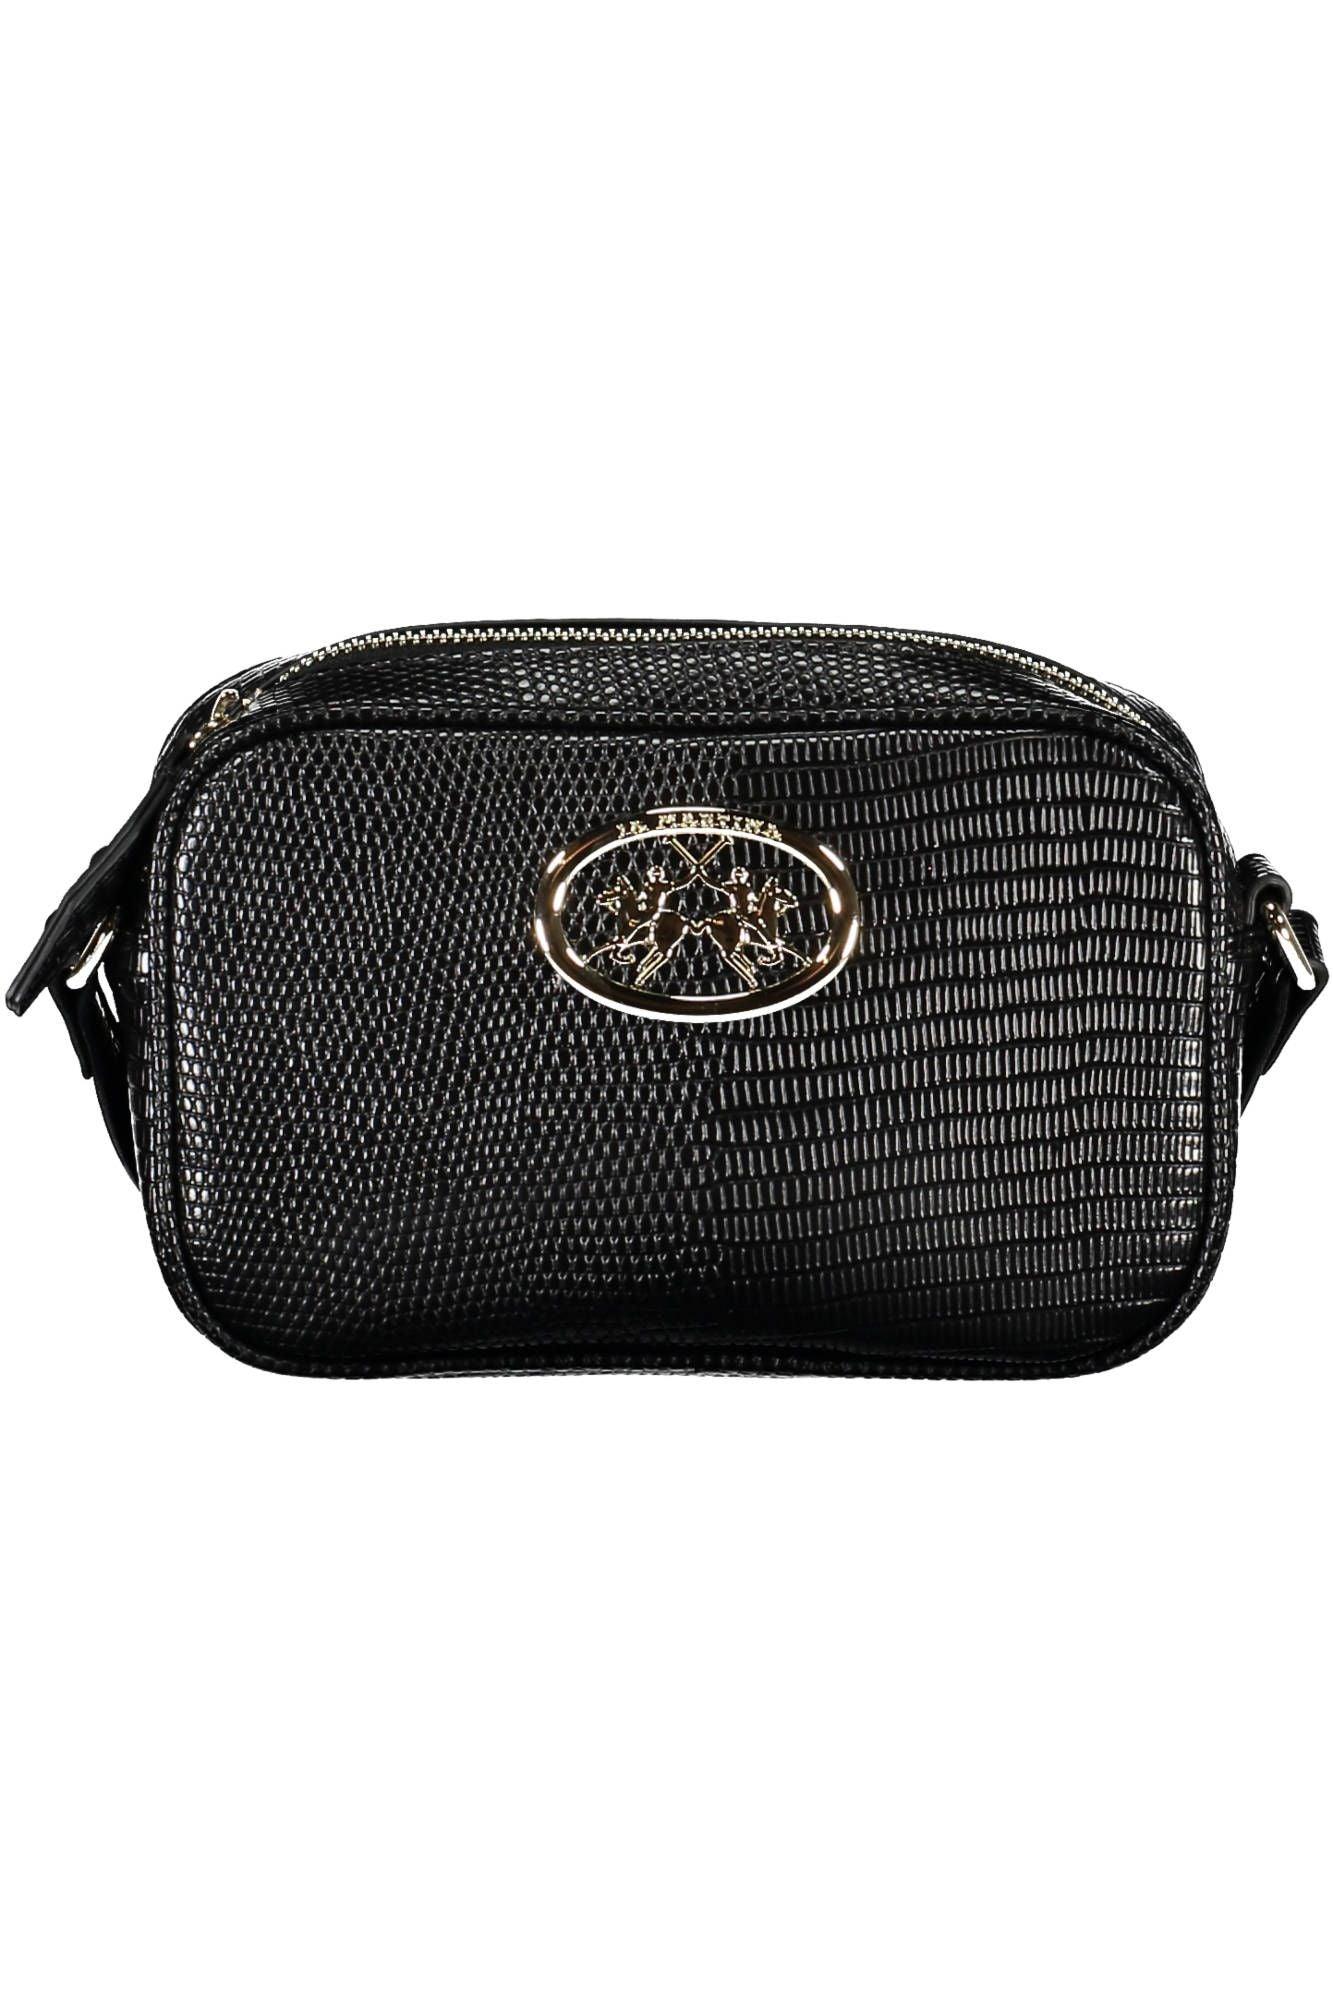 La Martina Sleek Black Shoulder Bag with Contrasting Details - PER.FASHION